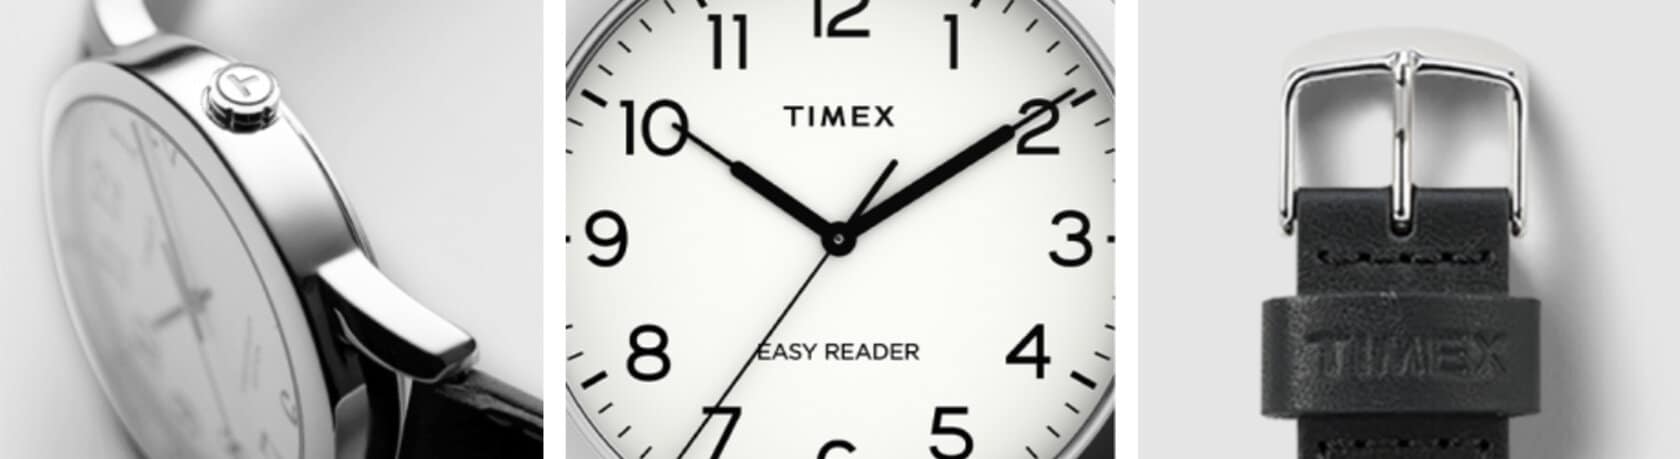 TIMEX klockor